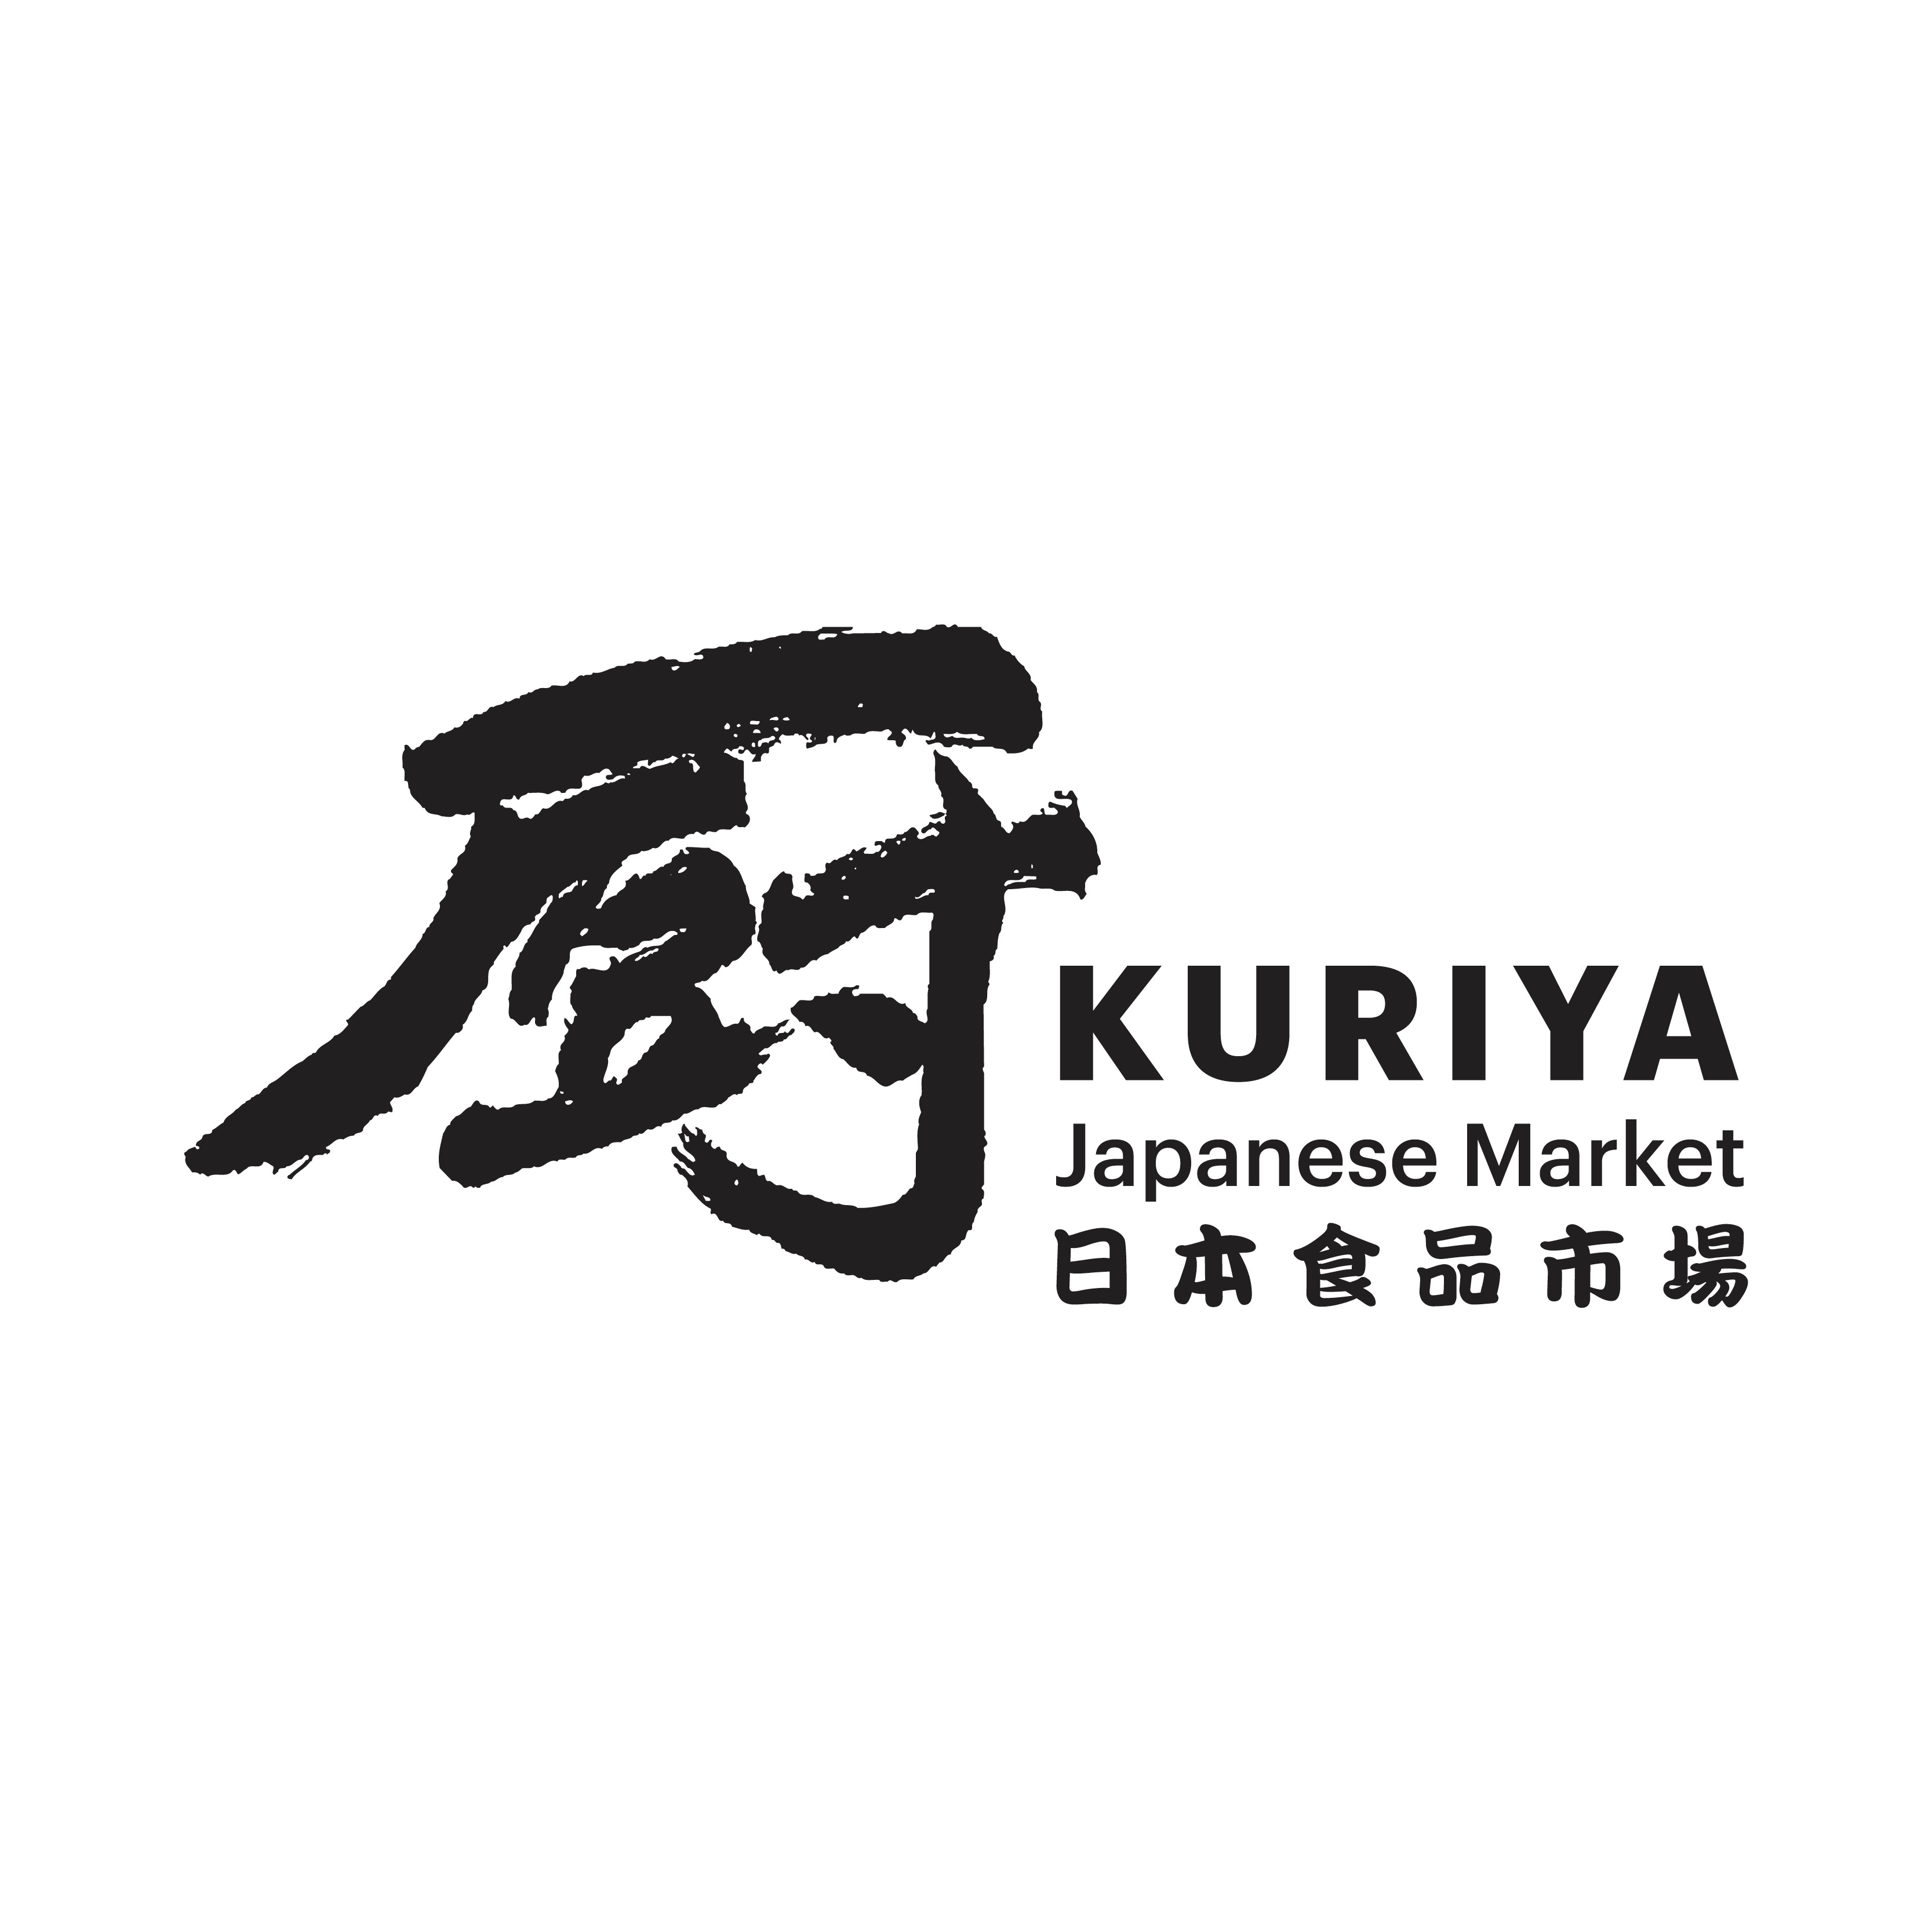 Kuriya Japanese Market 